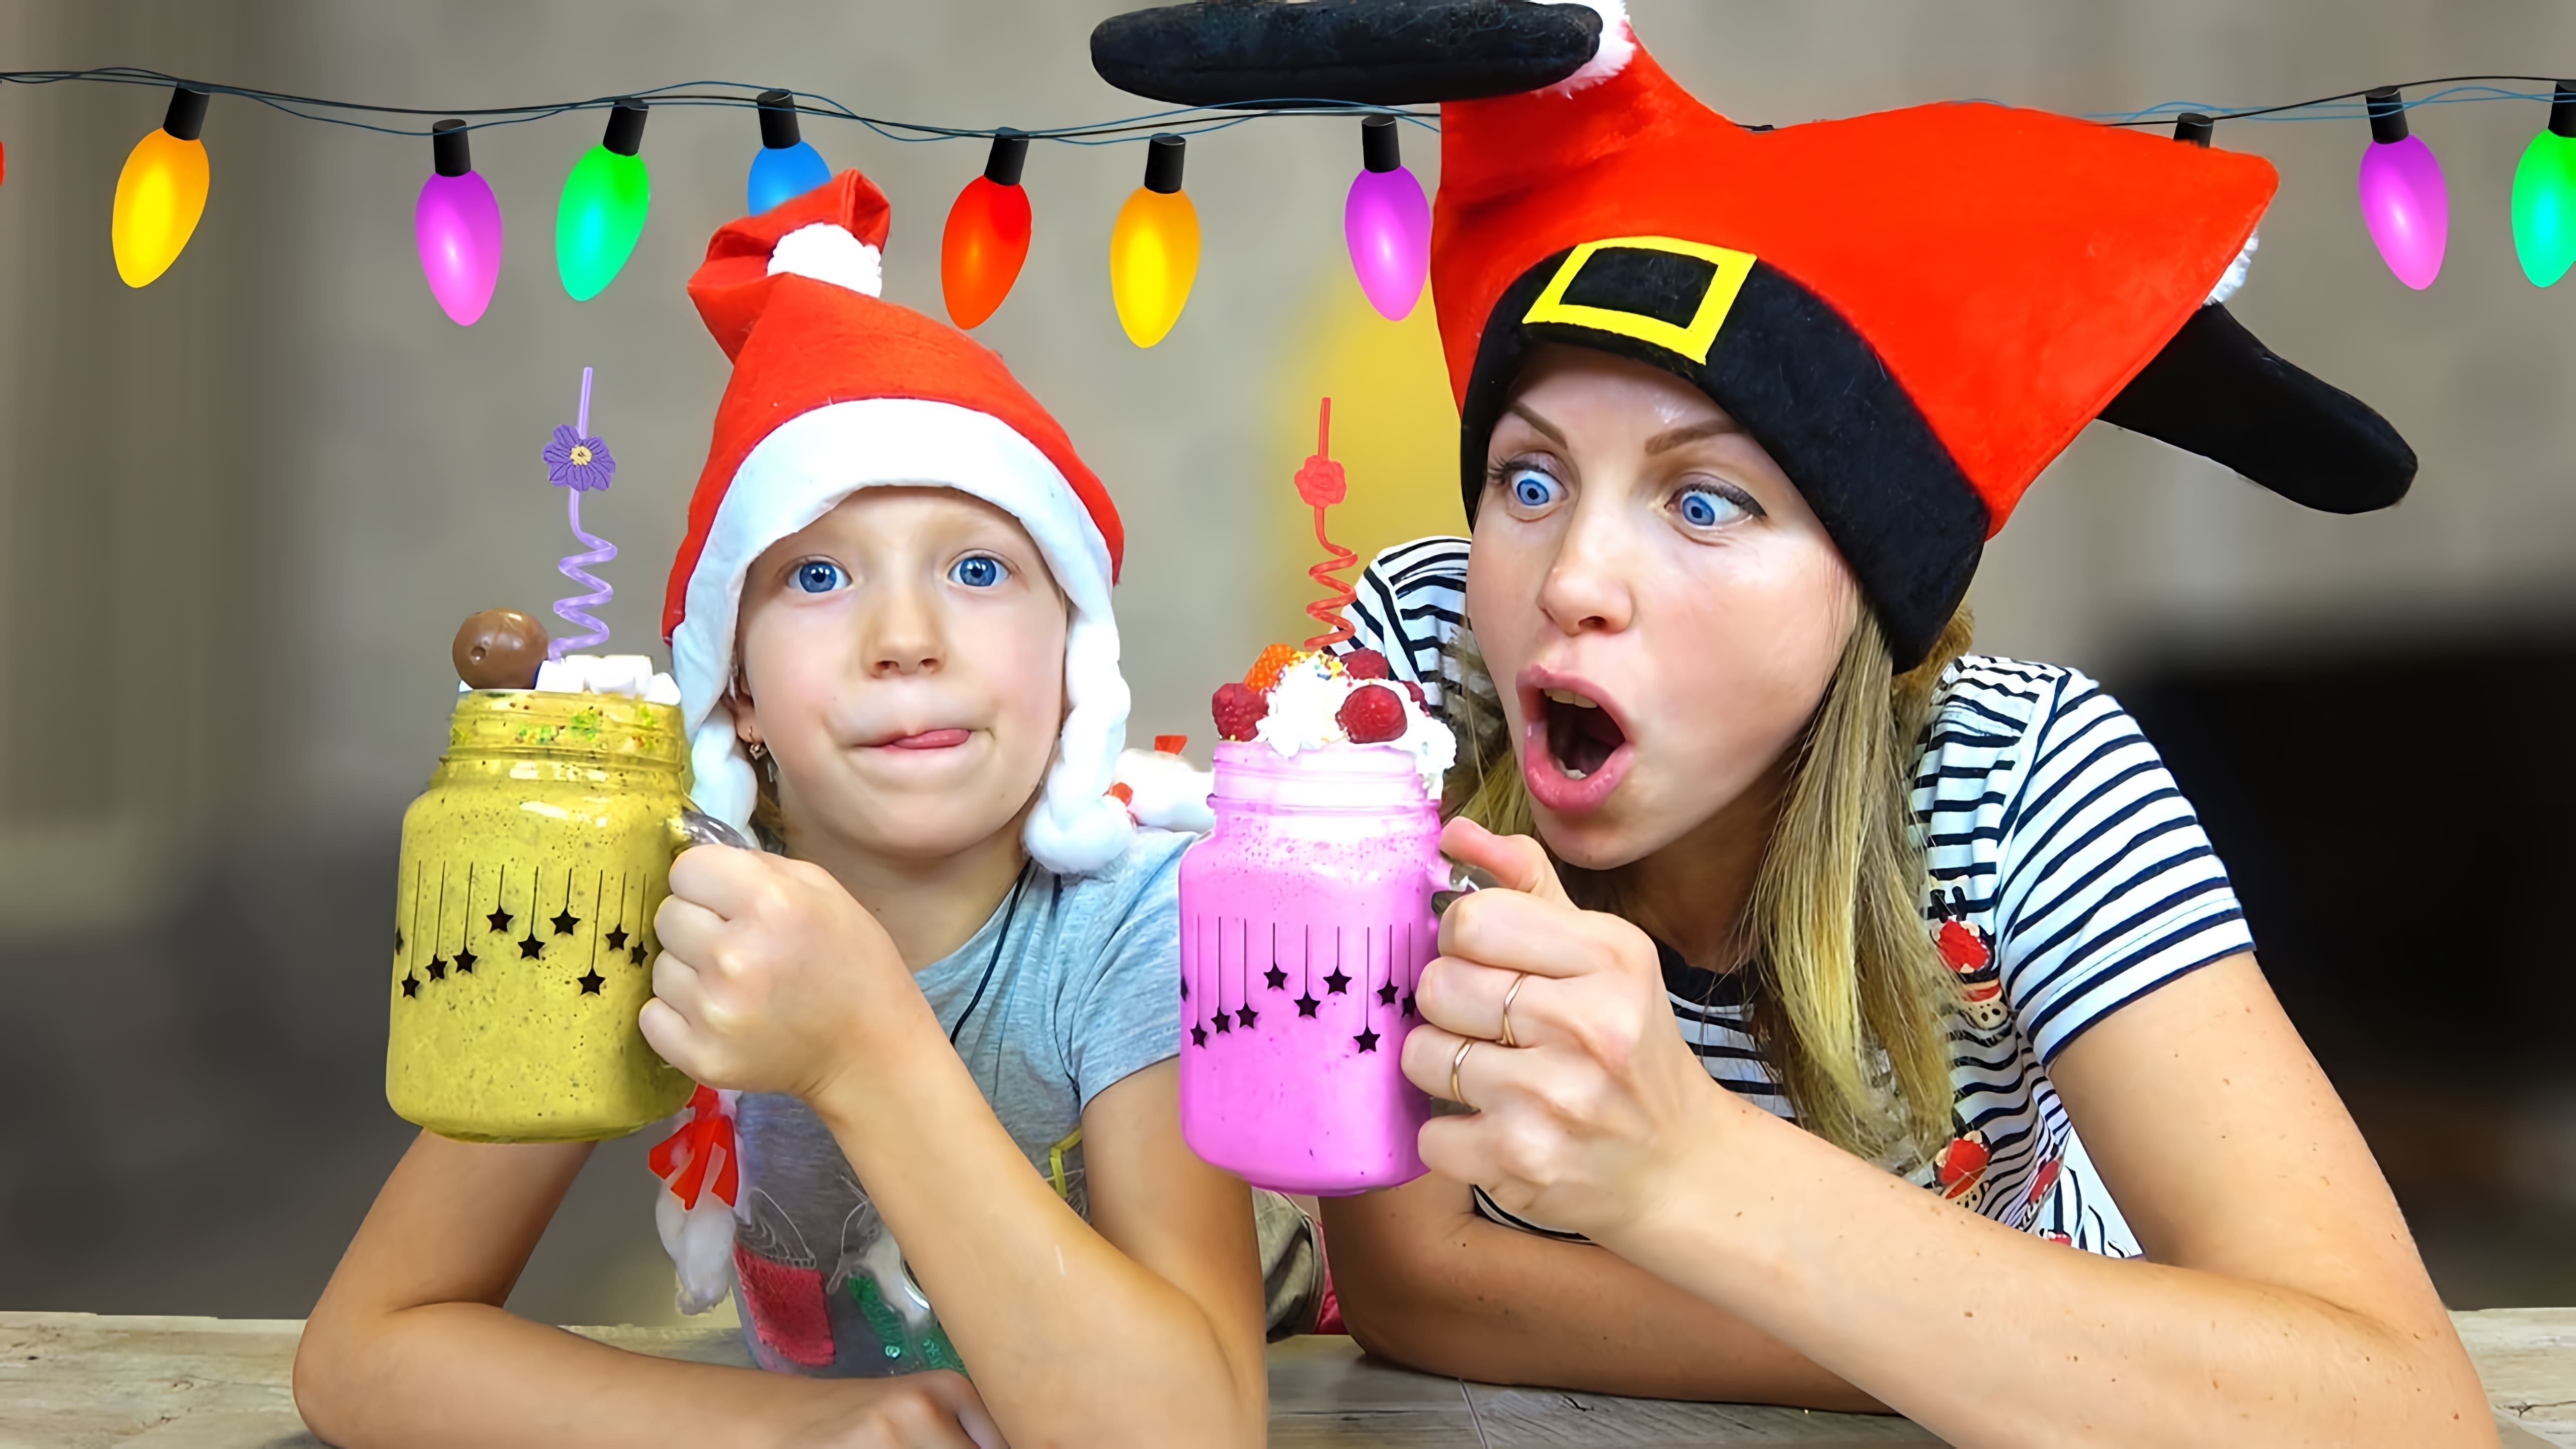 В этом видео Family Box представляет новогодний коктейль-челлендж, где участники должны угадать, какой из трех коктейлей (ванильный, шоколадный или клубничный) загадал другой участник